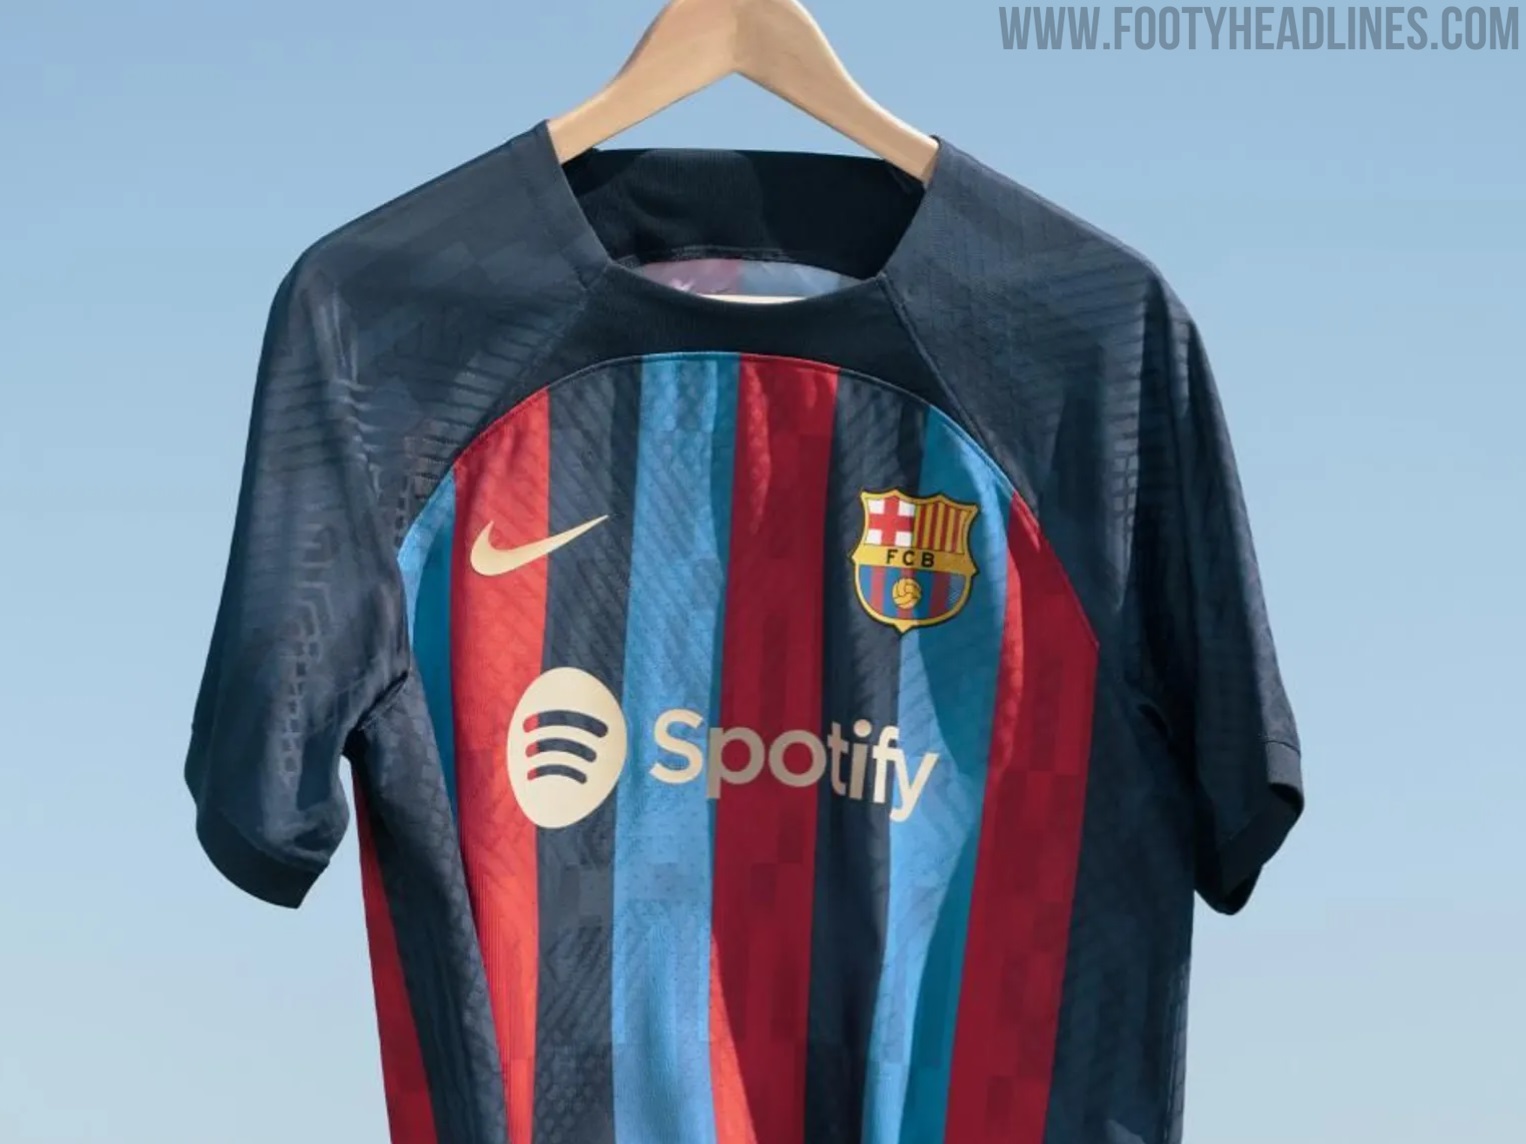 Wonderbaarlijk onderwijs Afgeschaft FC Barcelona 22-23 Home Kit Released - Footy Headlines